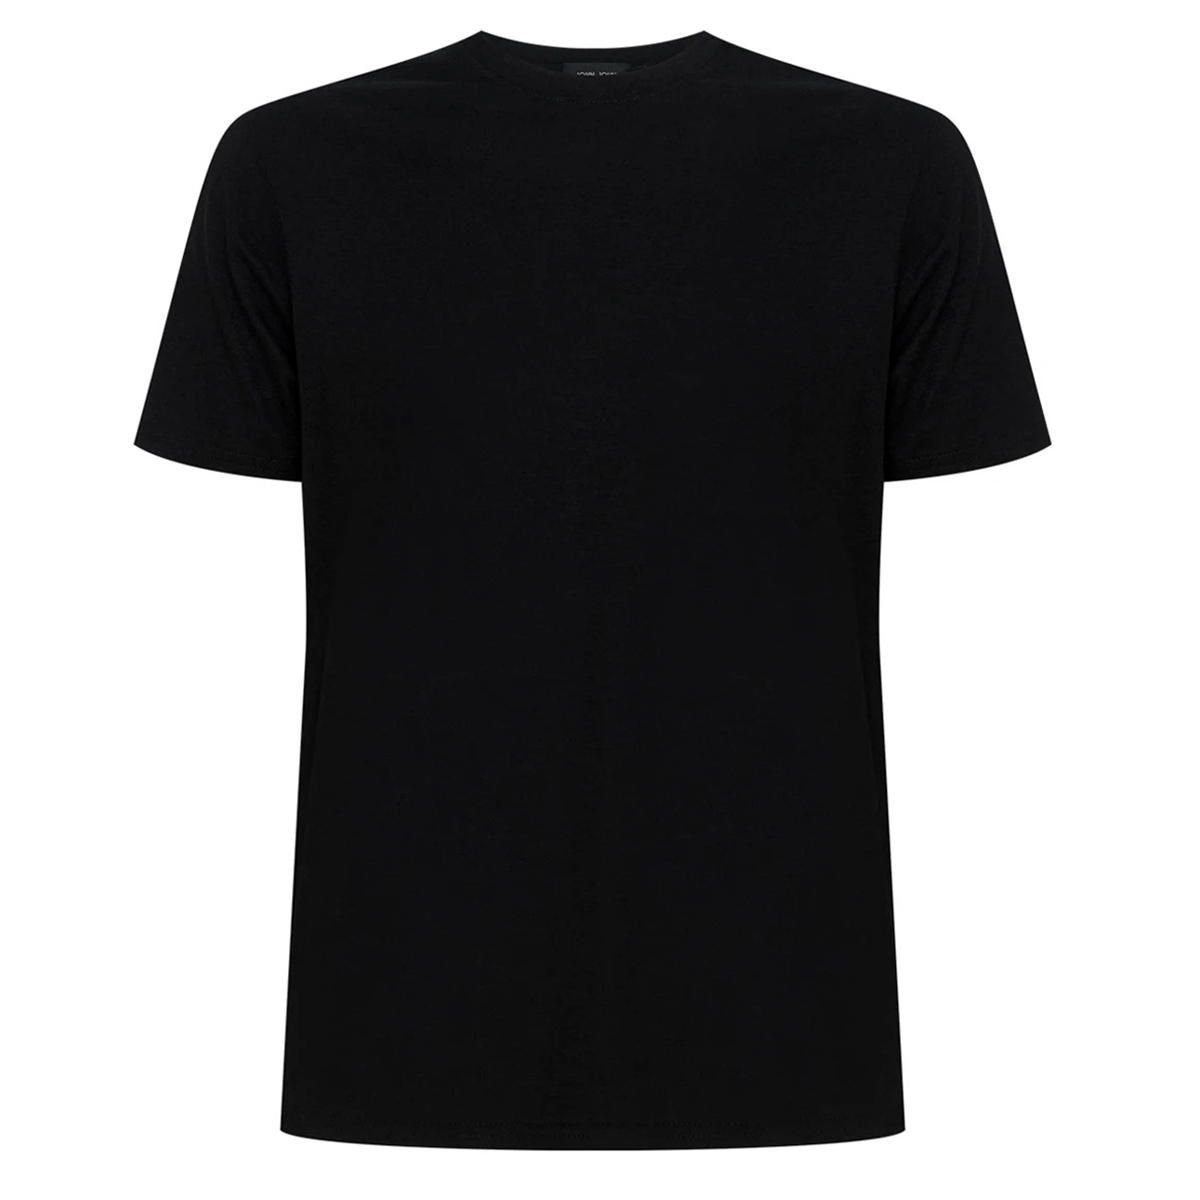 Camiseta John John Out Black - Estilo Urbano e Sofisticado para Homens  Modernos